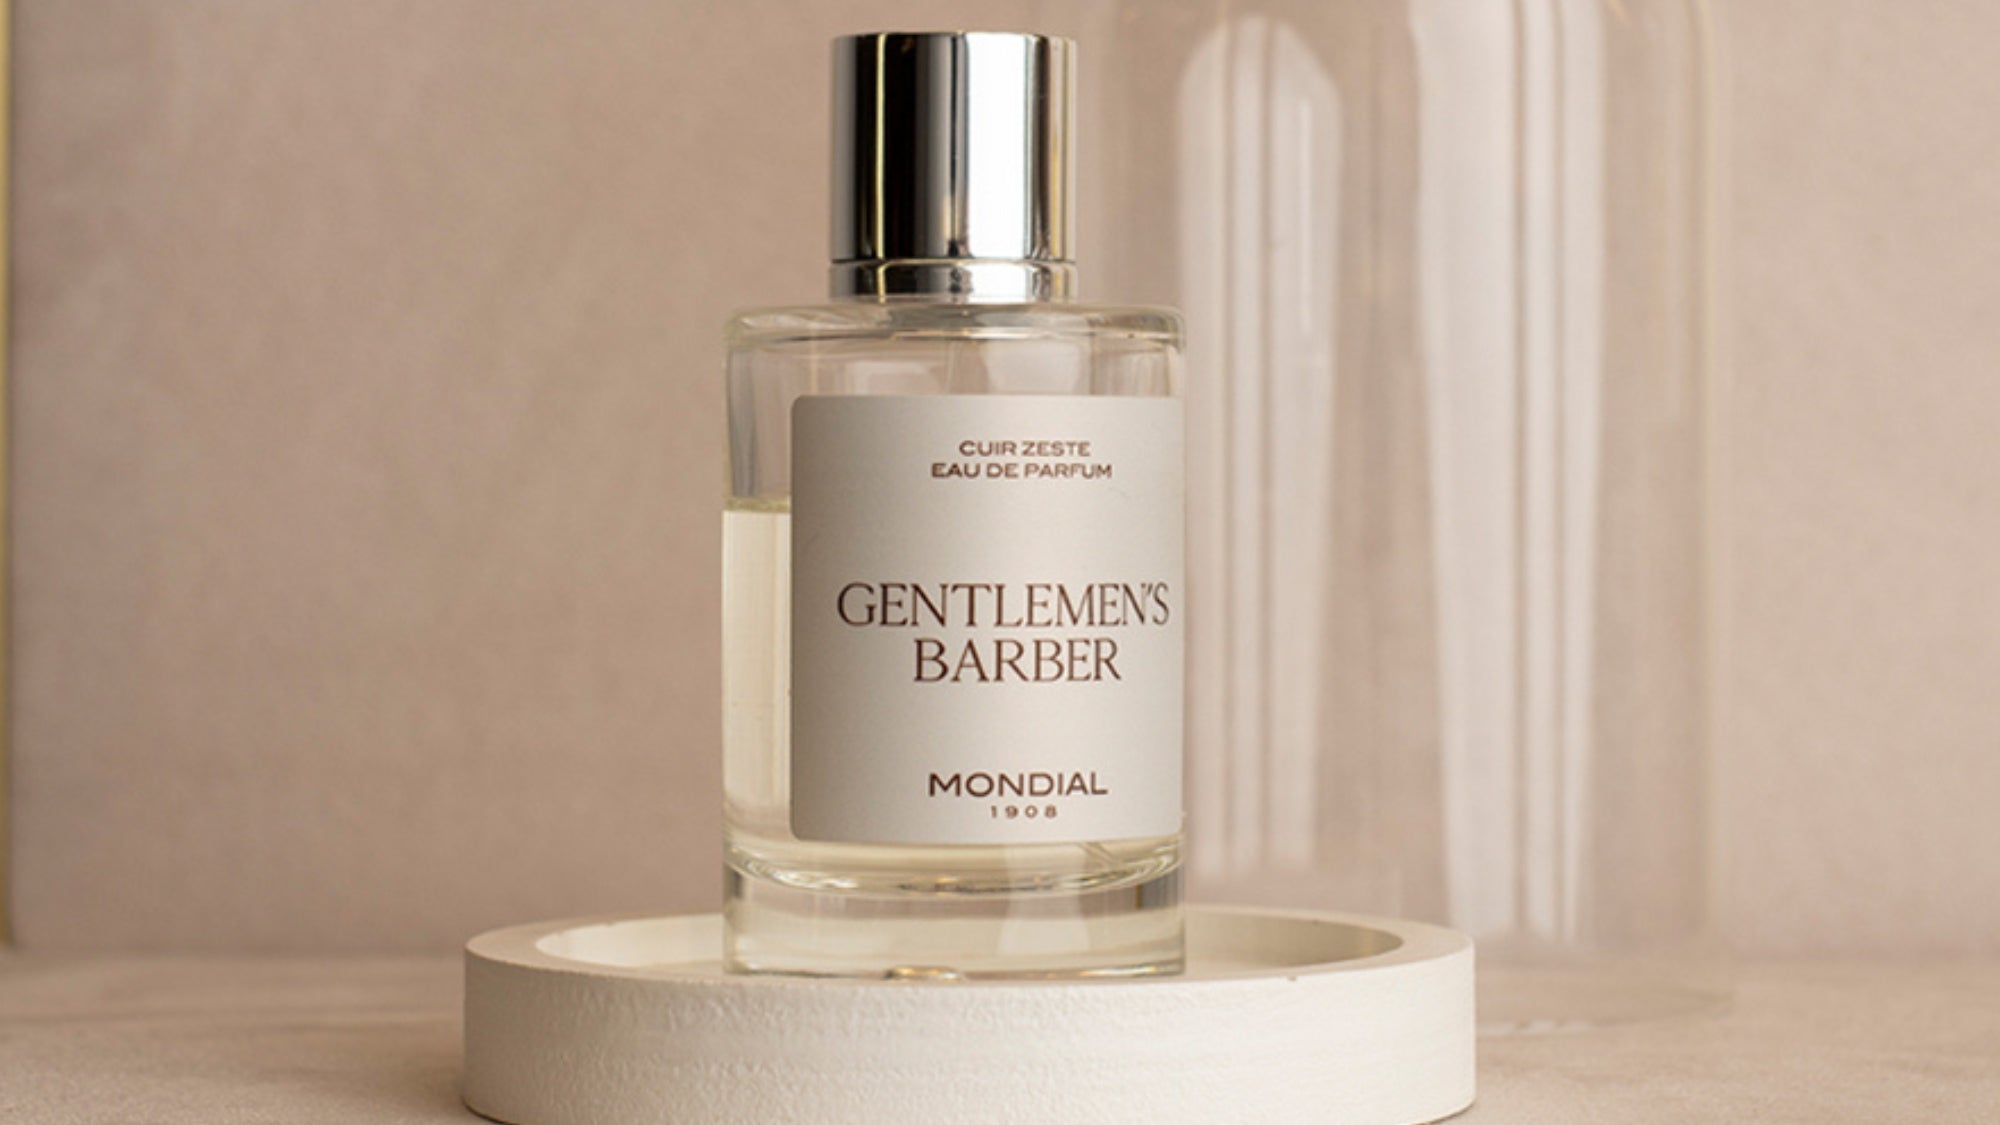 The 'Gentlemen's Barber' Collection